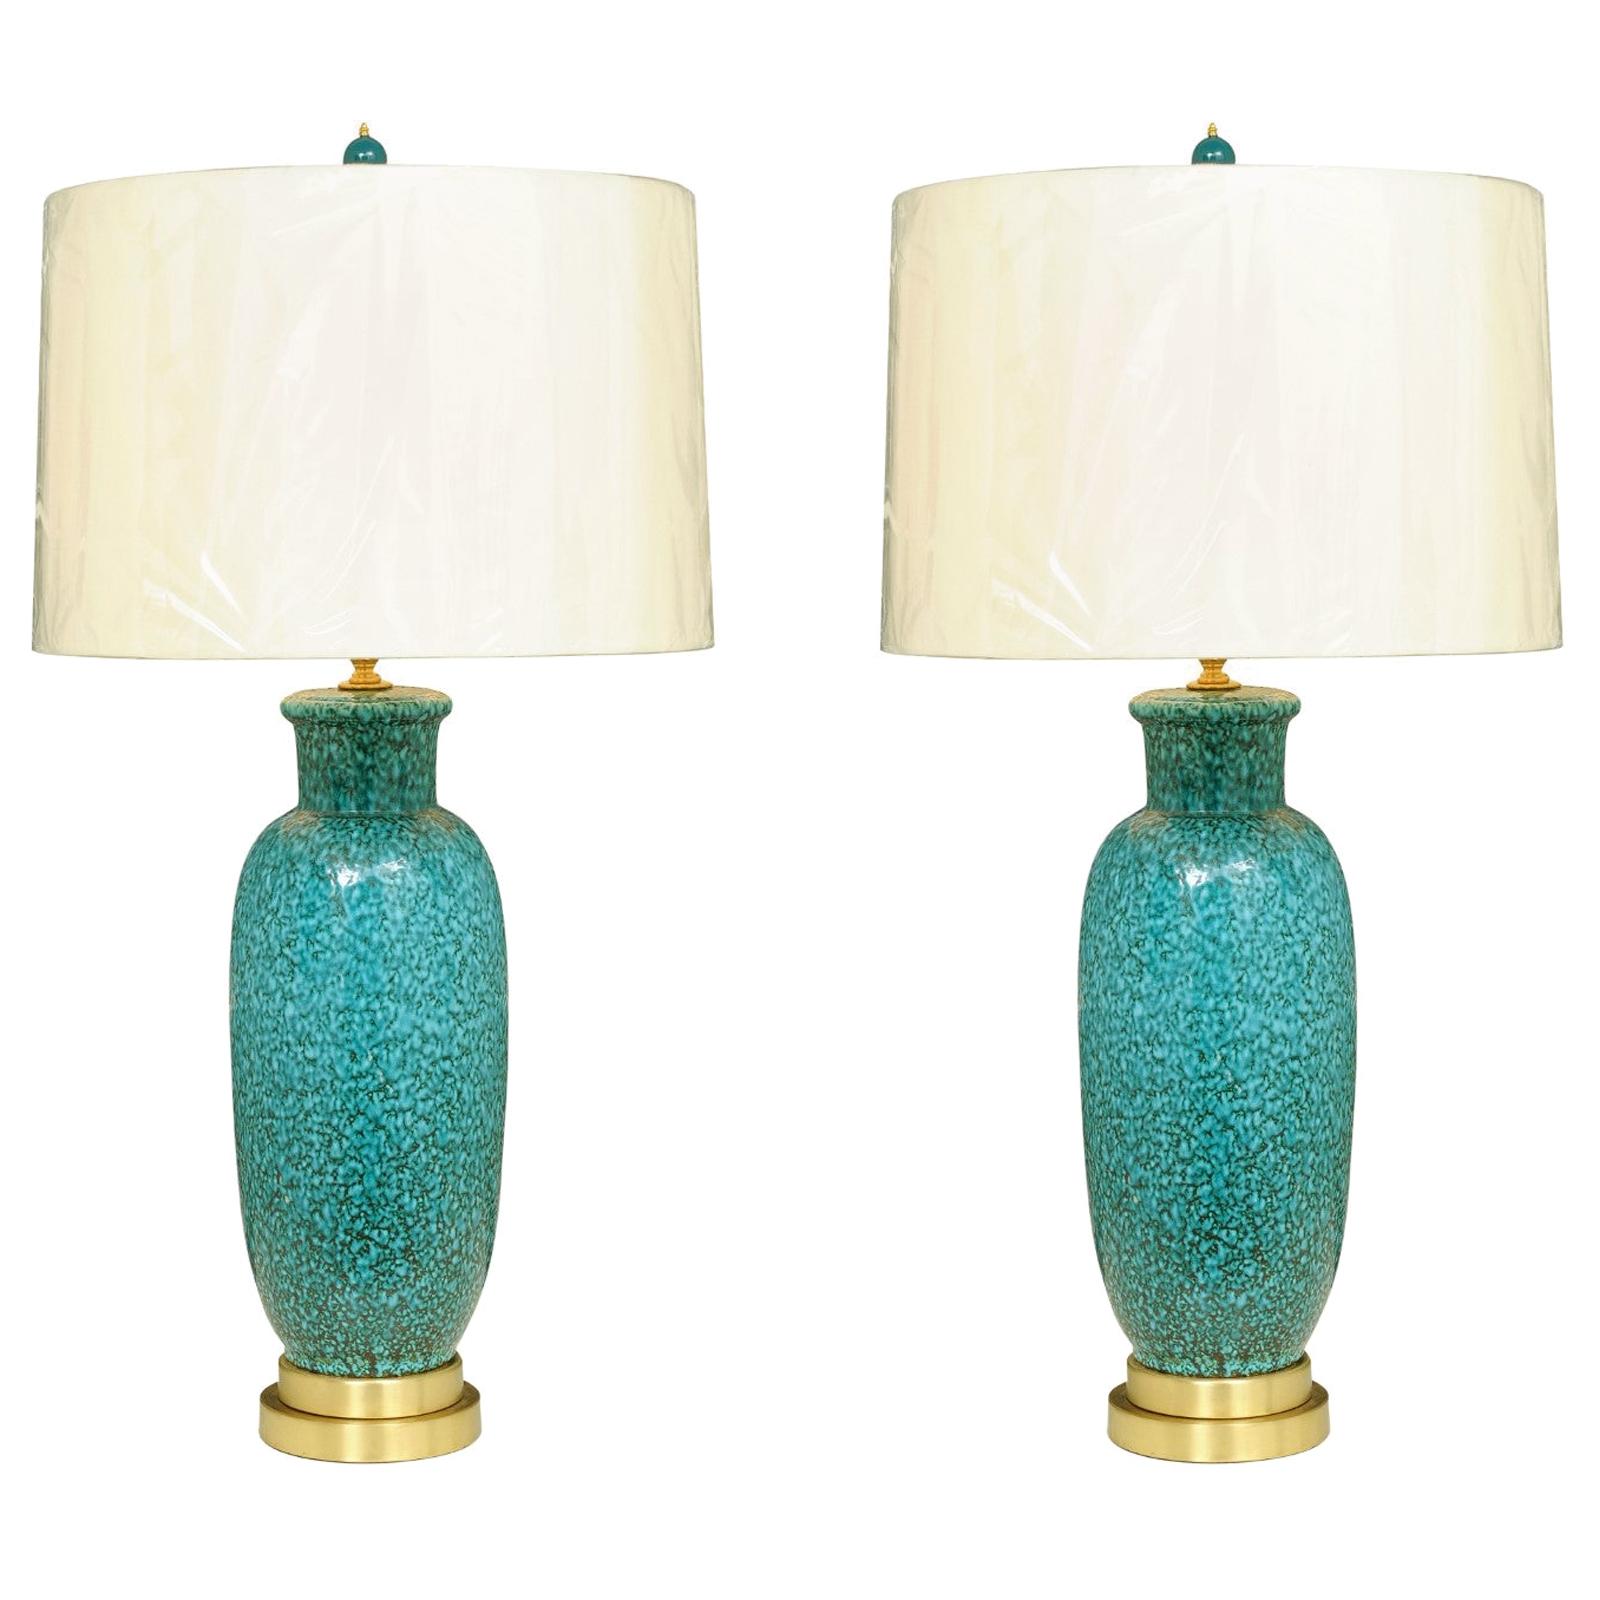 Exceptionnelle paire de lampes en céramique italienne restaurée en turquoise:: circa 1960